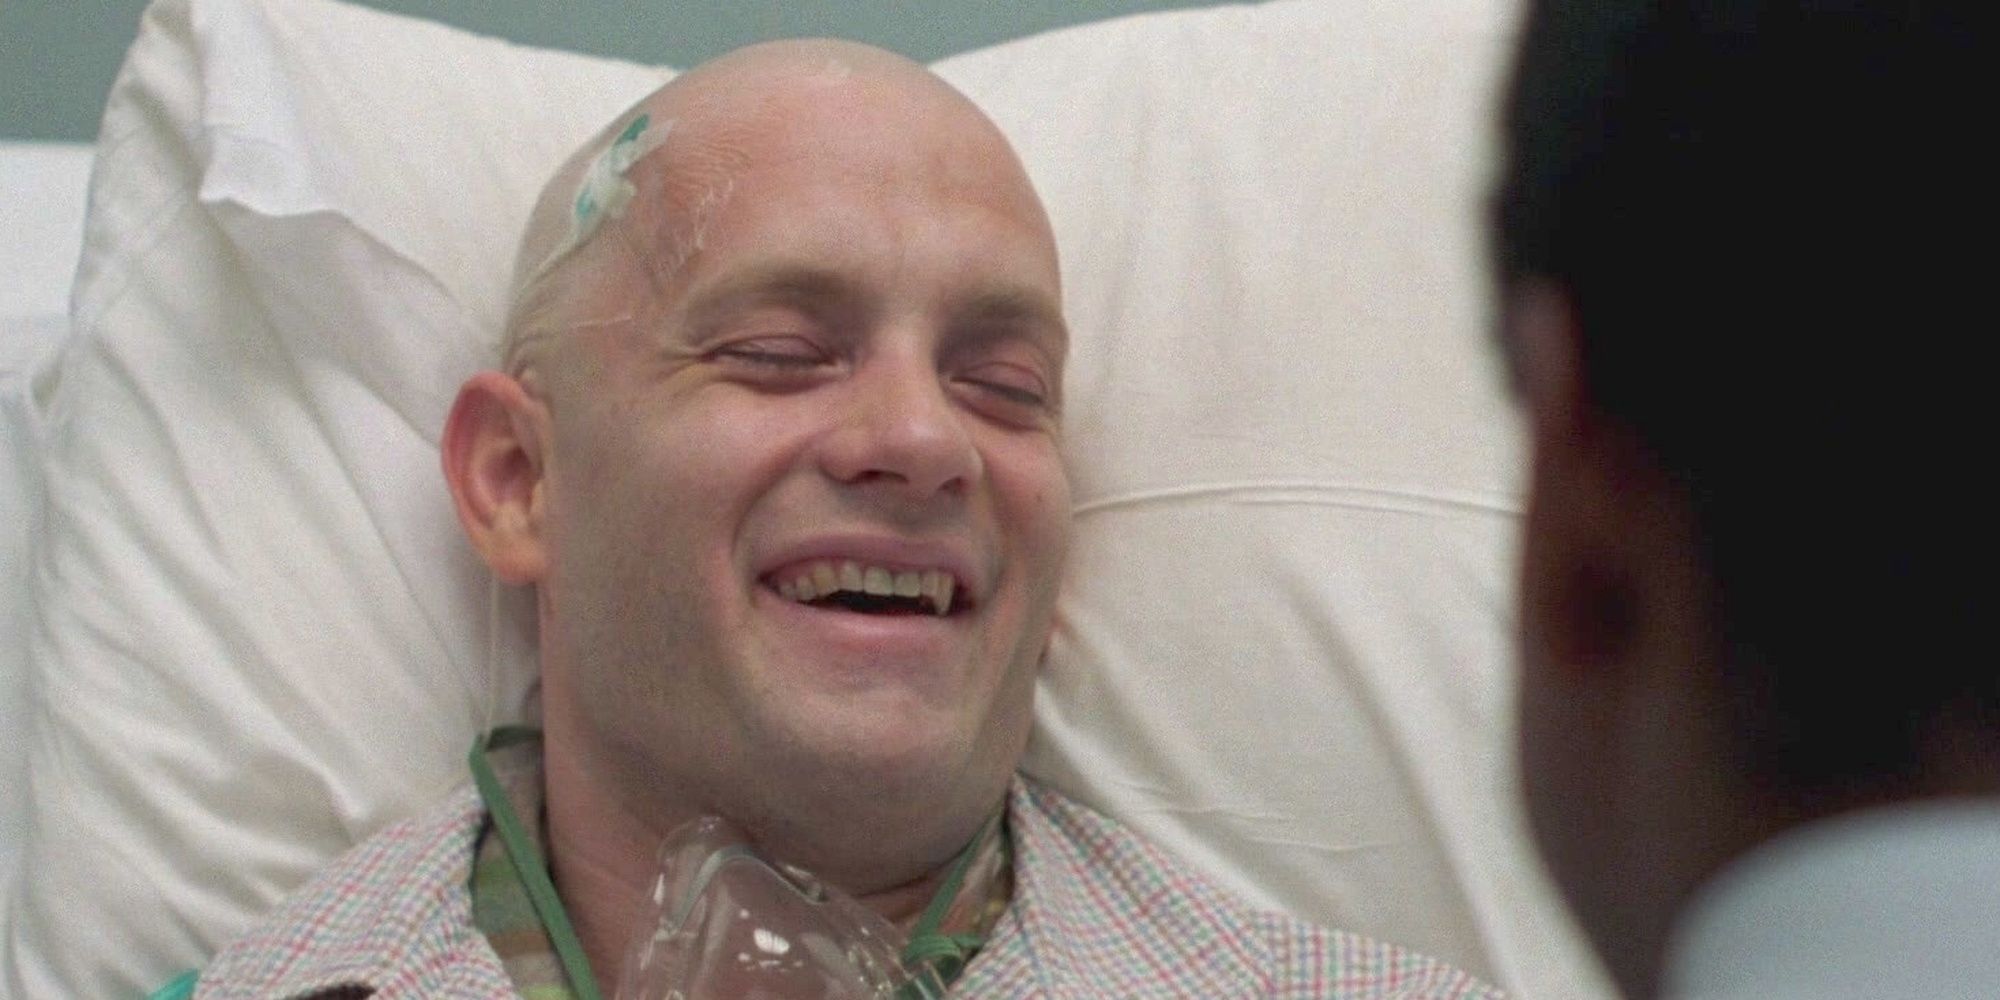 tom hanks in the hospital in the movie philadelphia 